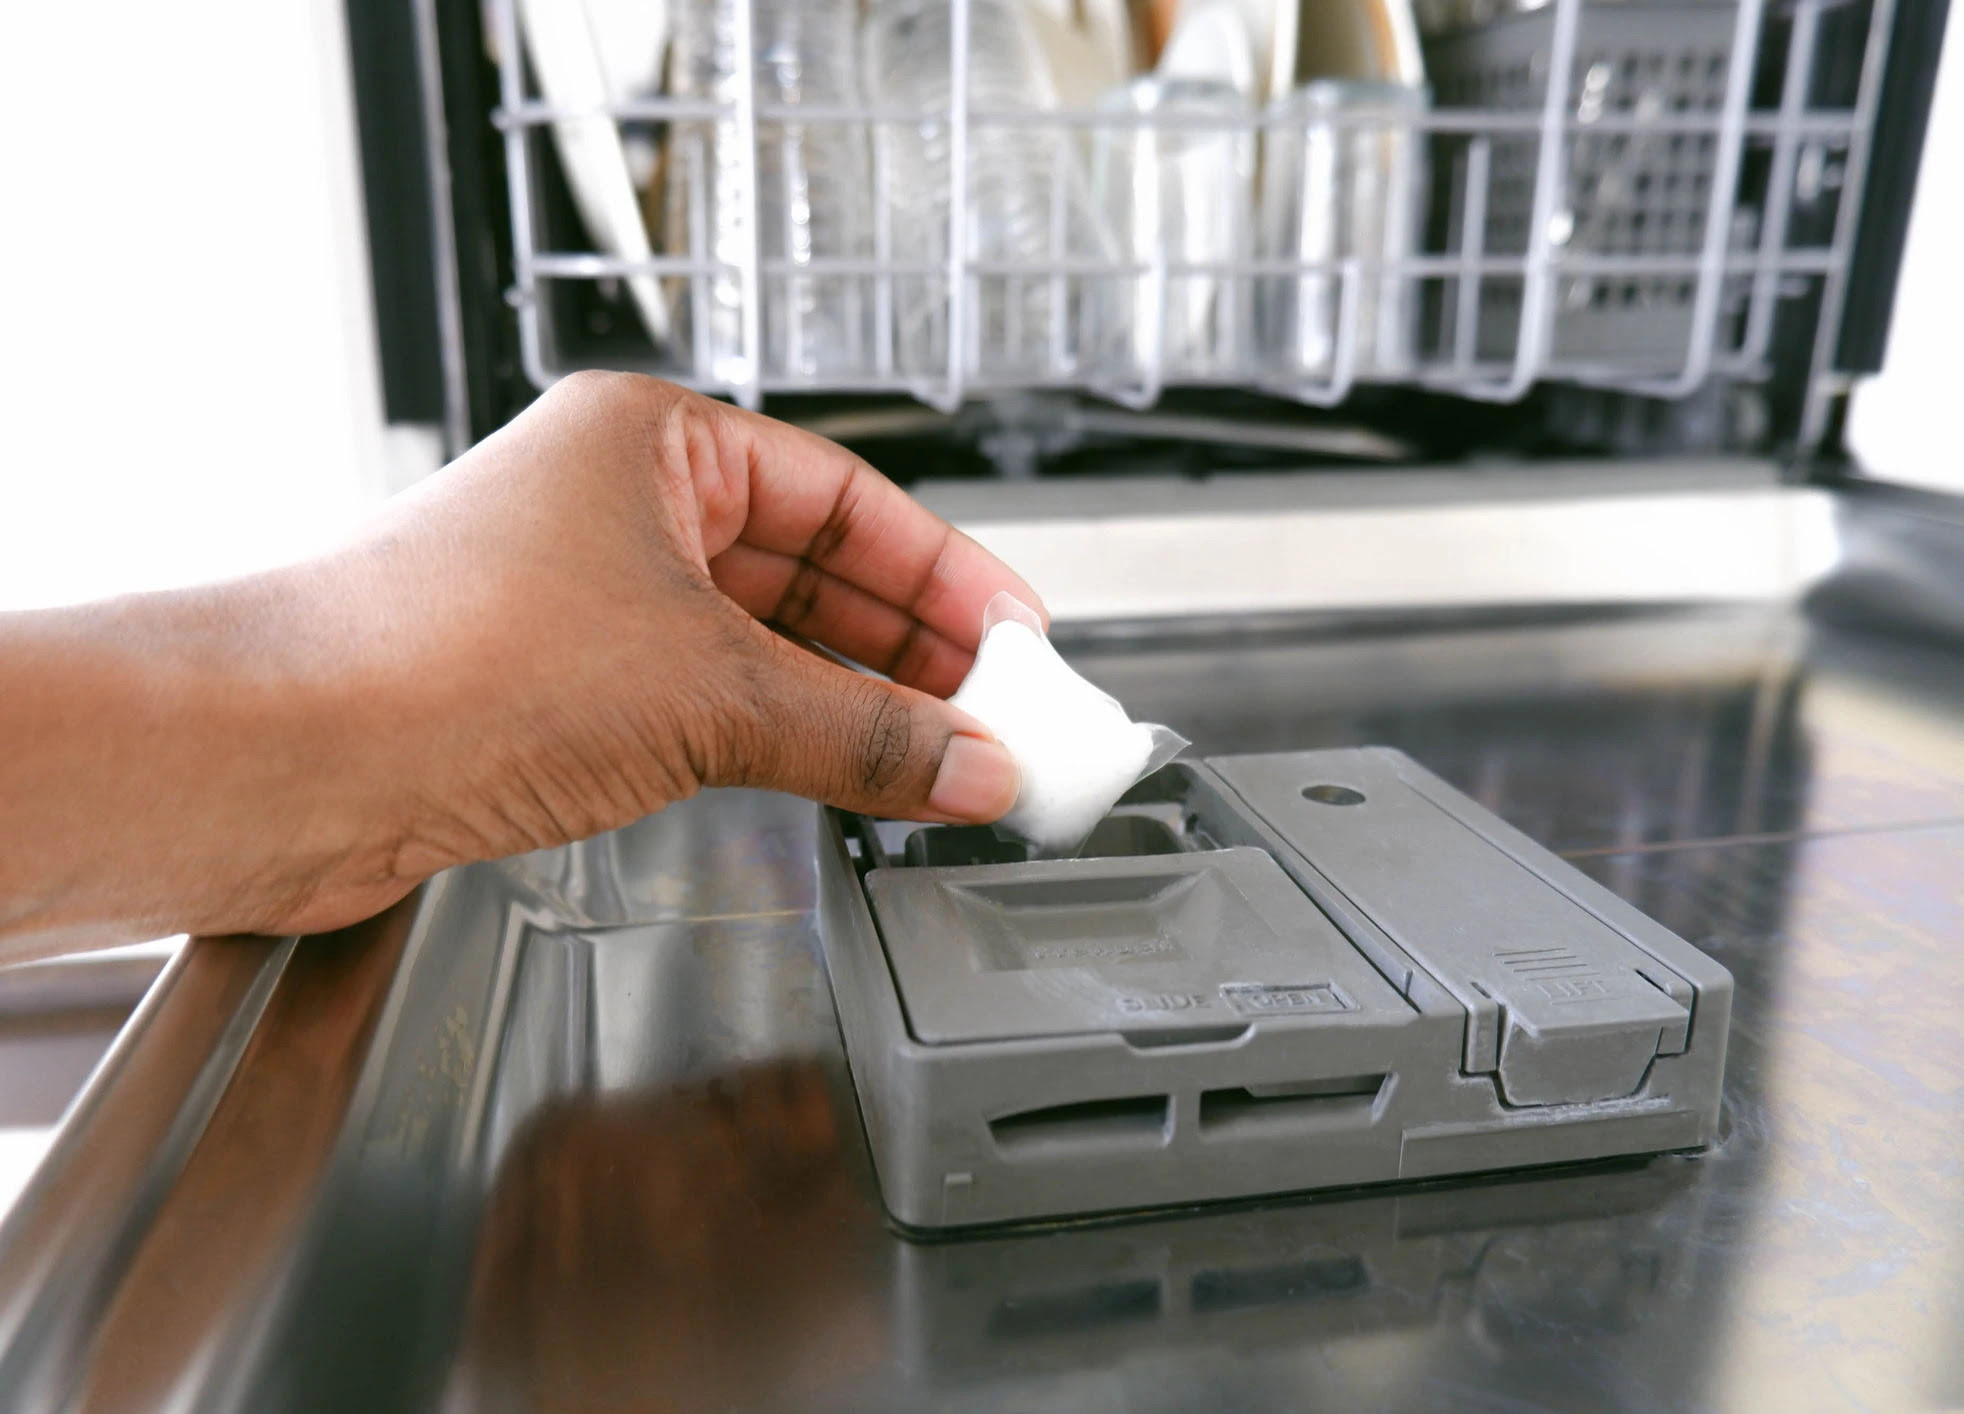 7 Best Dishwasher Detergent Pods For 2023 1689139641 